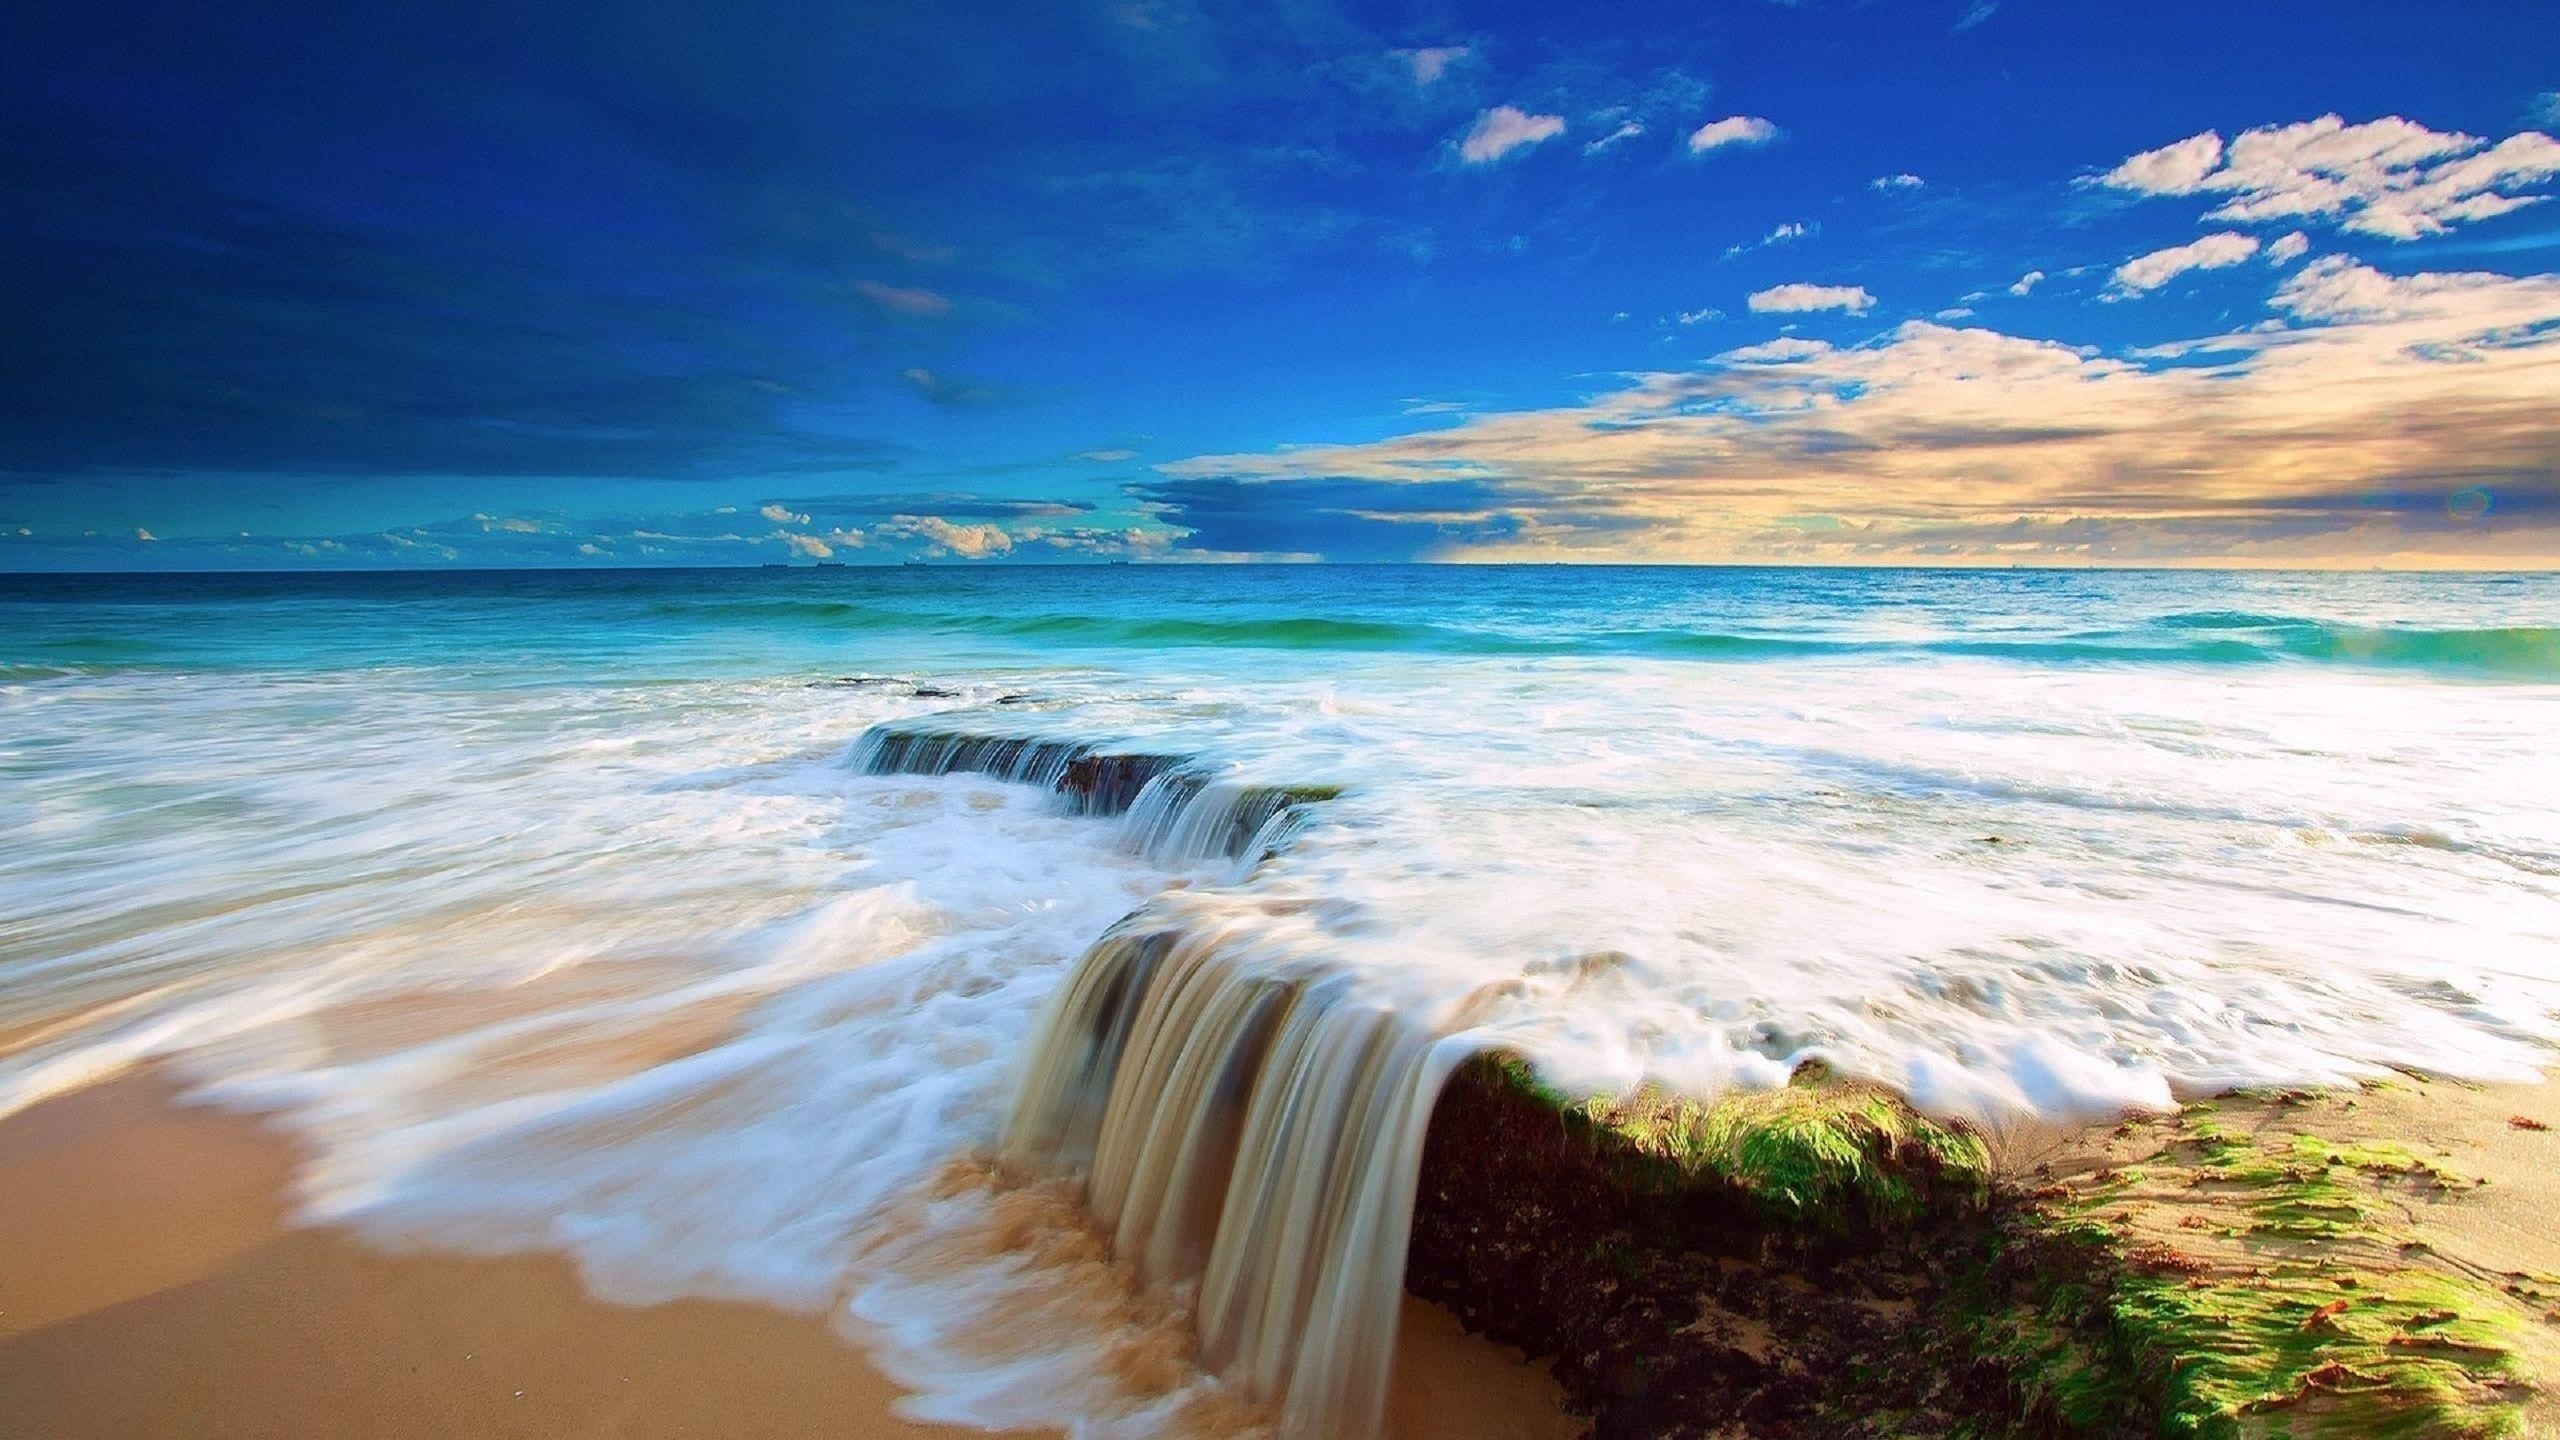 Волны переполняют переднюю часть океана под голубым небом природа обои скачать